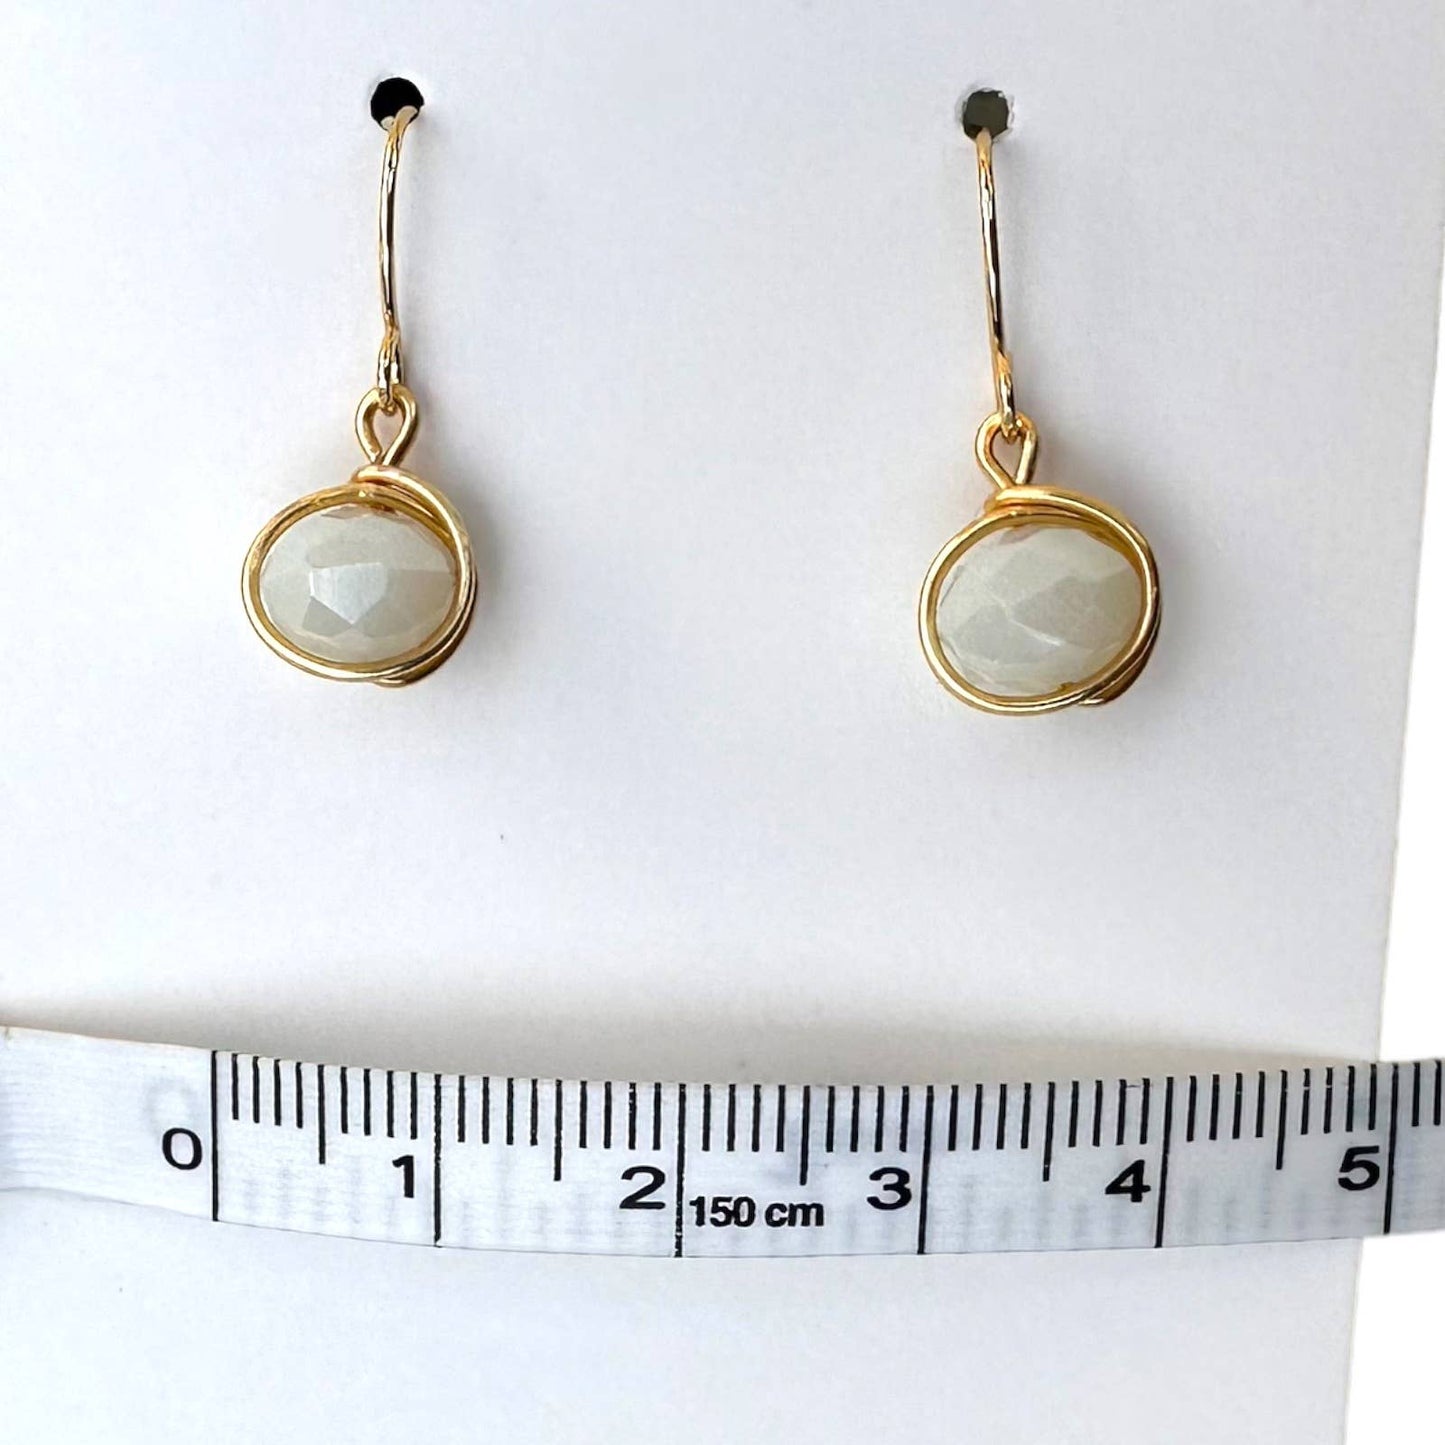 Handmade Elegant White Glass Bead Earrings - 14K Gold Plated, Minimalist Design